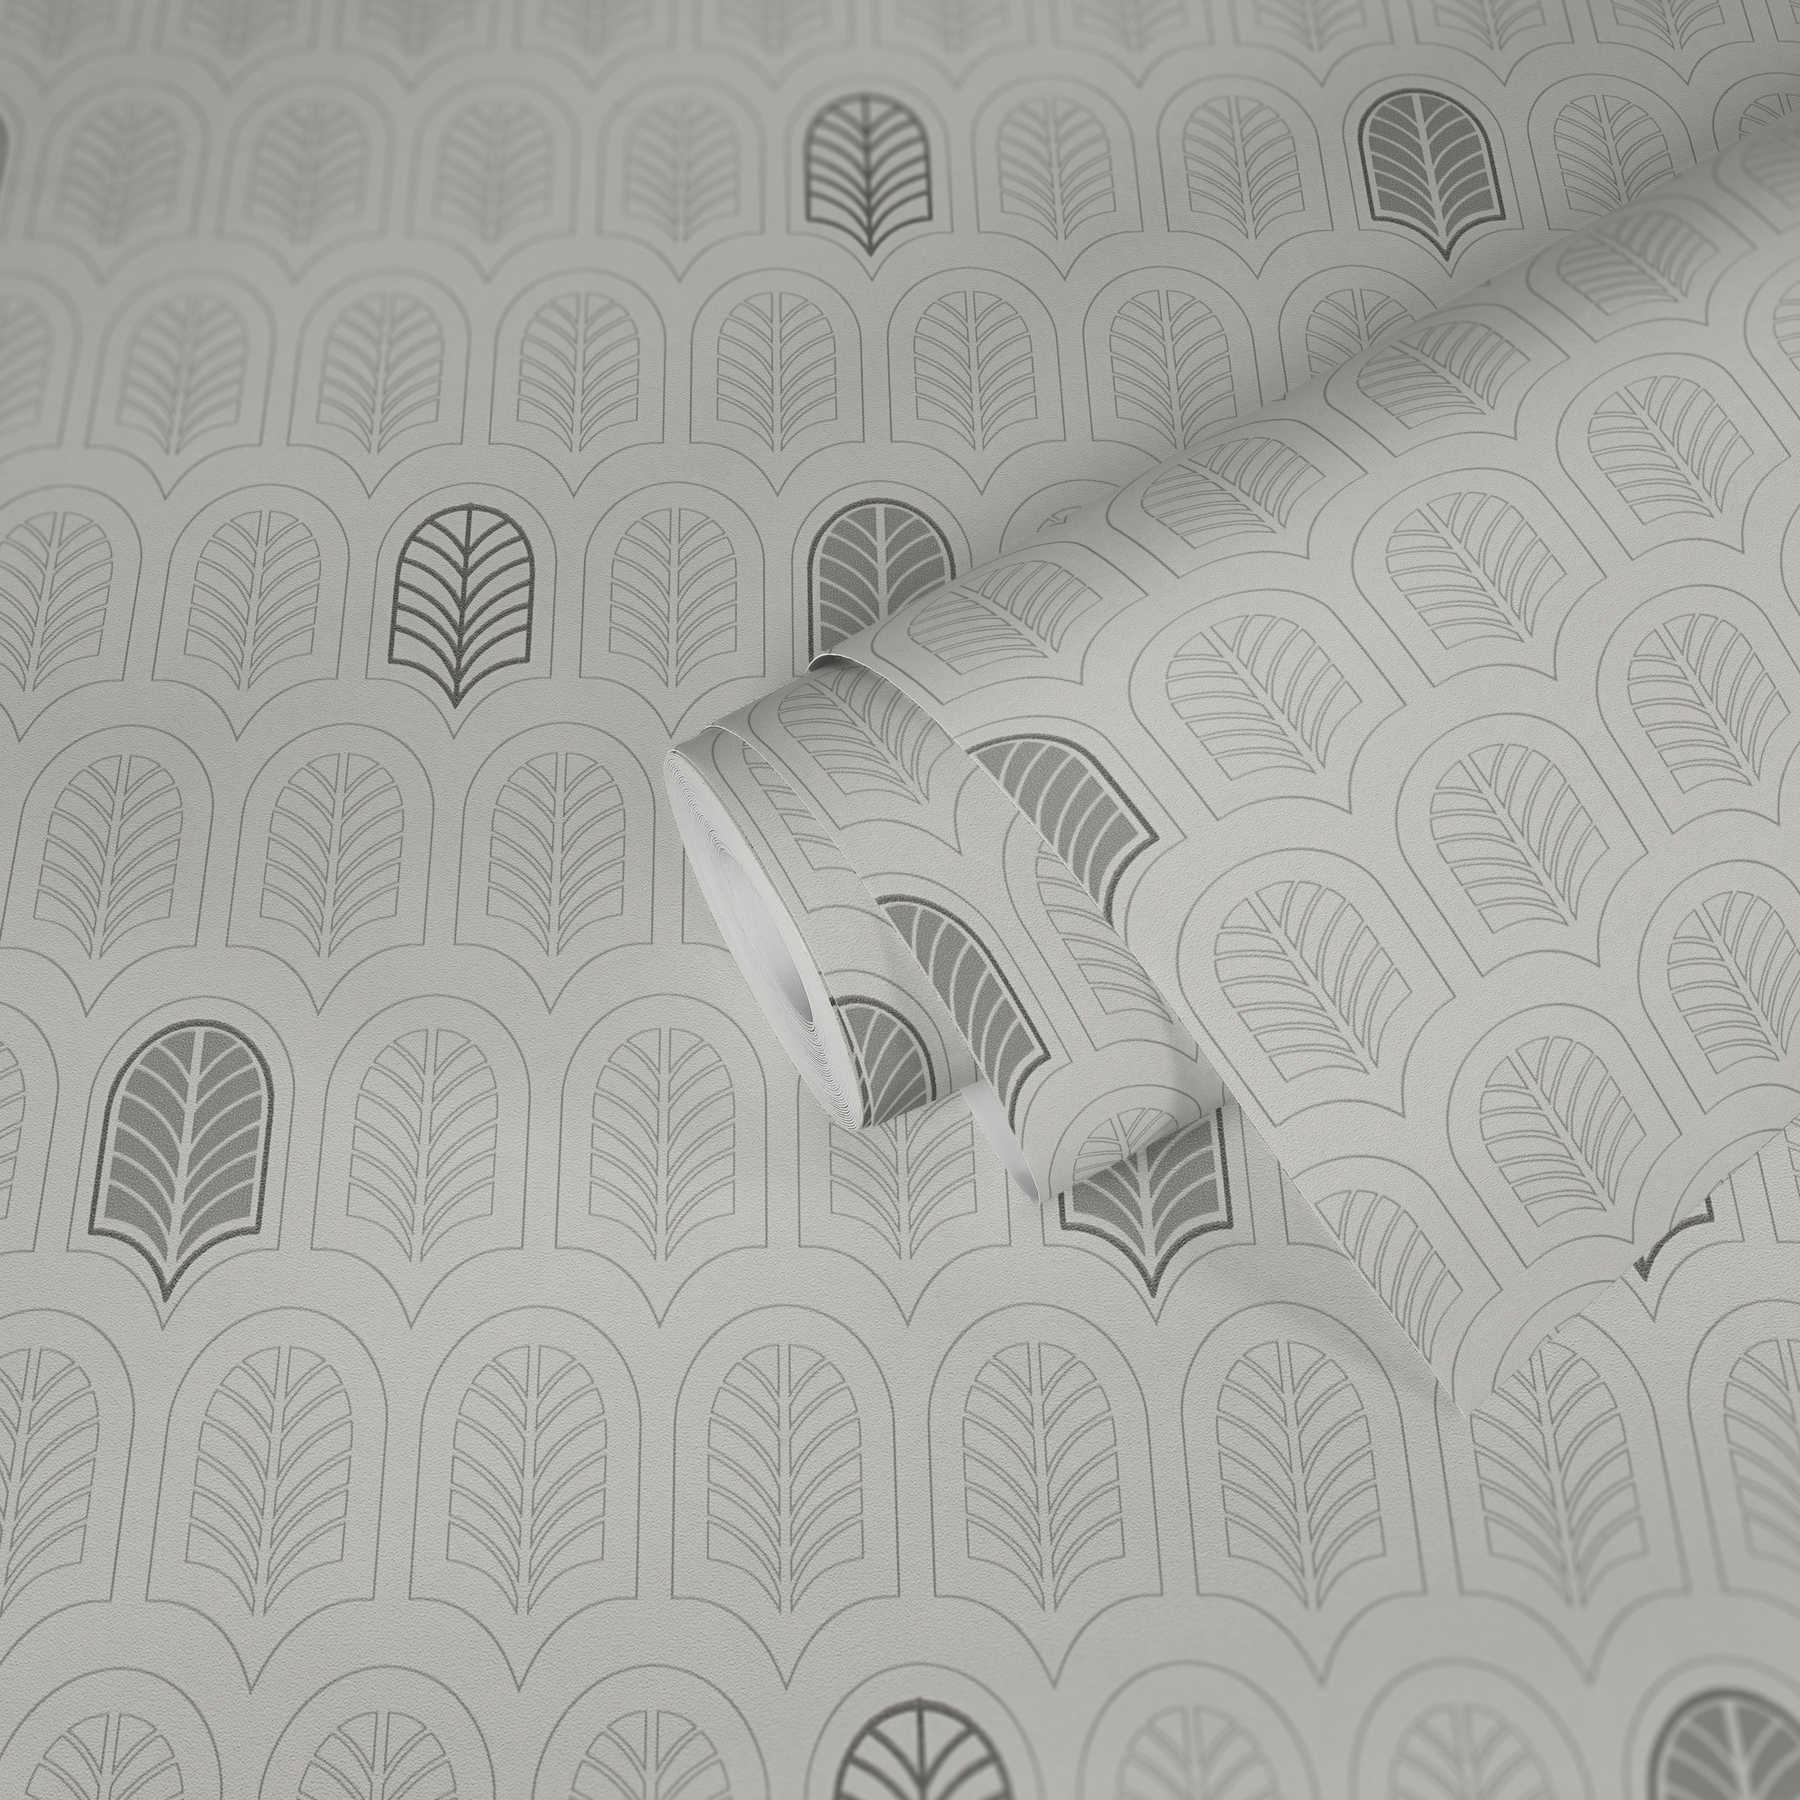             Retro-Tapete im Art Déco Stil, Matt & Glitzer-Effekt – Weiß, Grau, Anthrazit
        